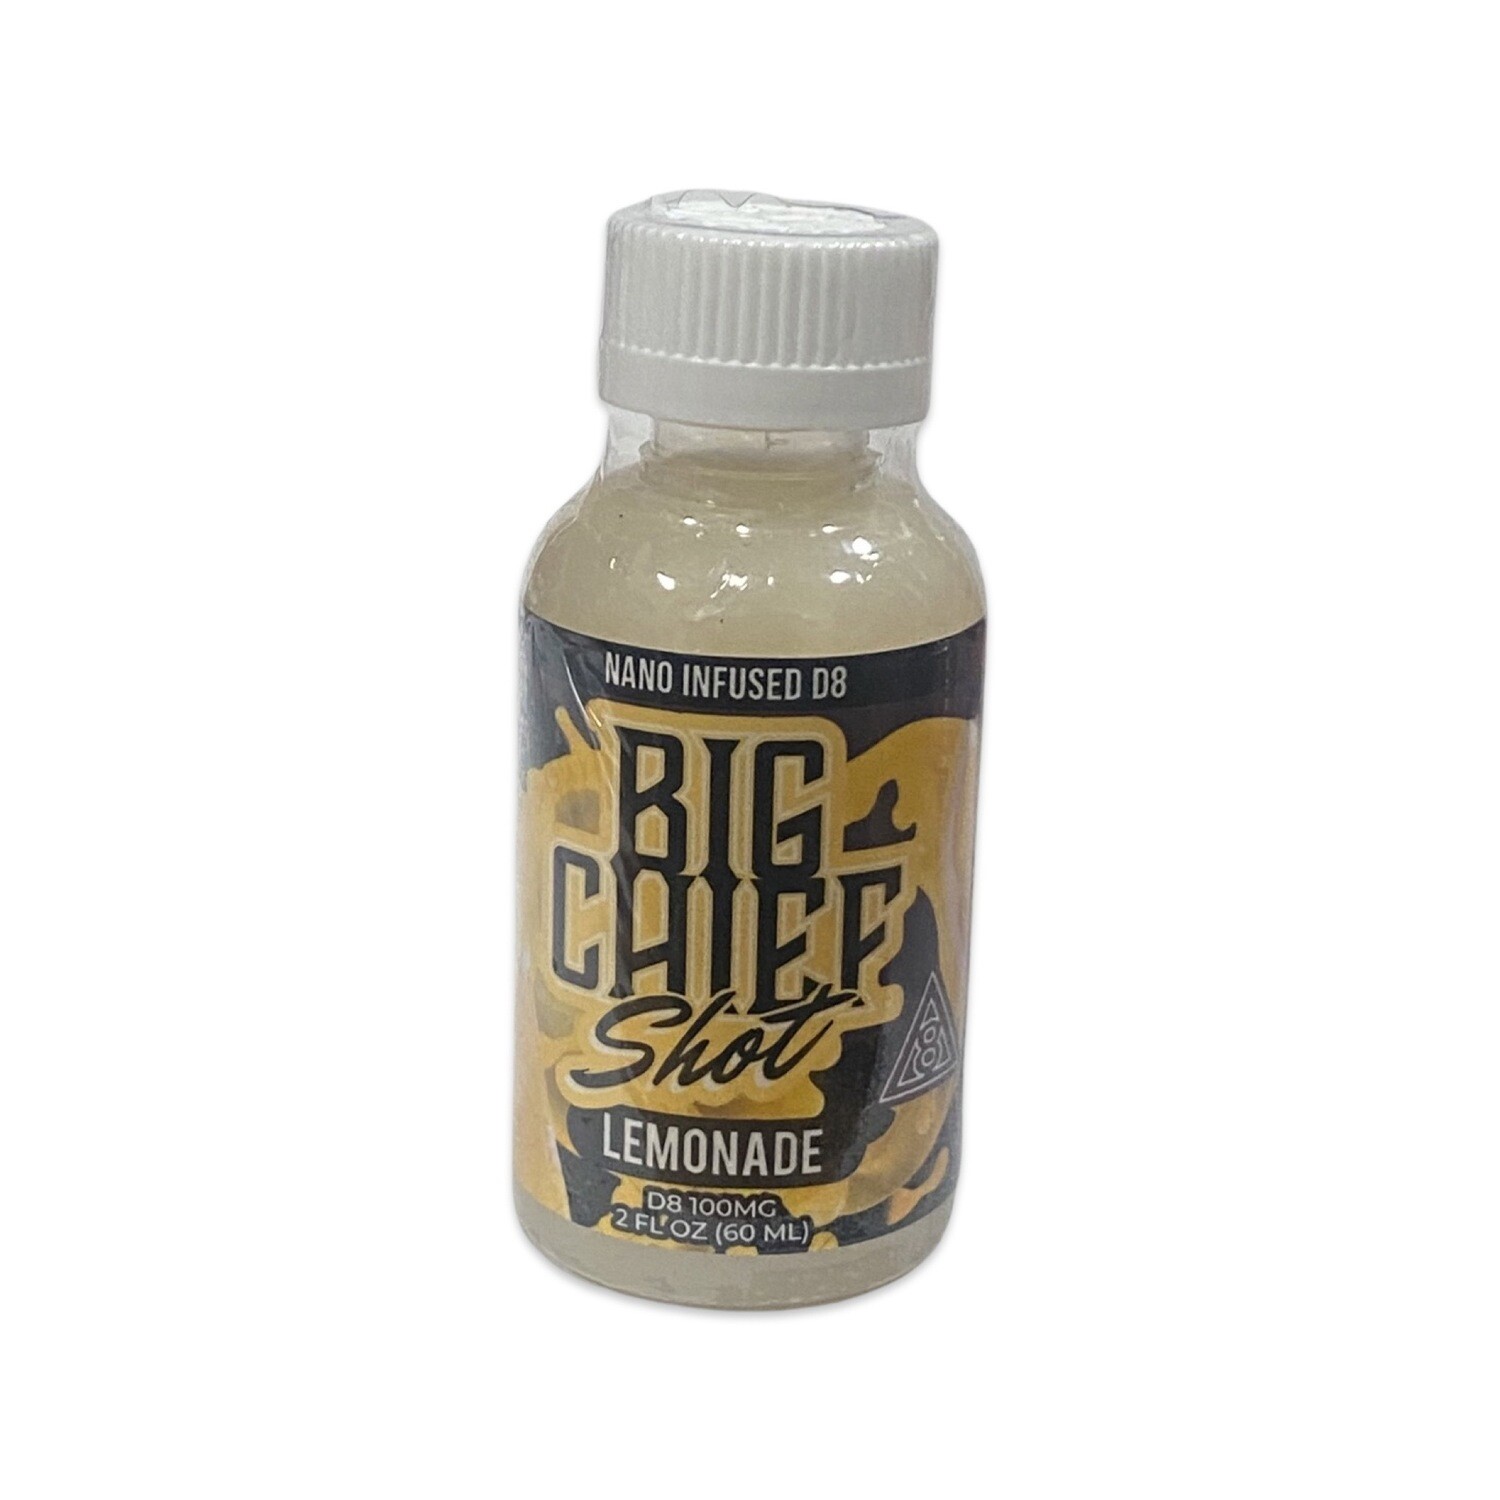 Edible- Big Chief Shot